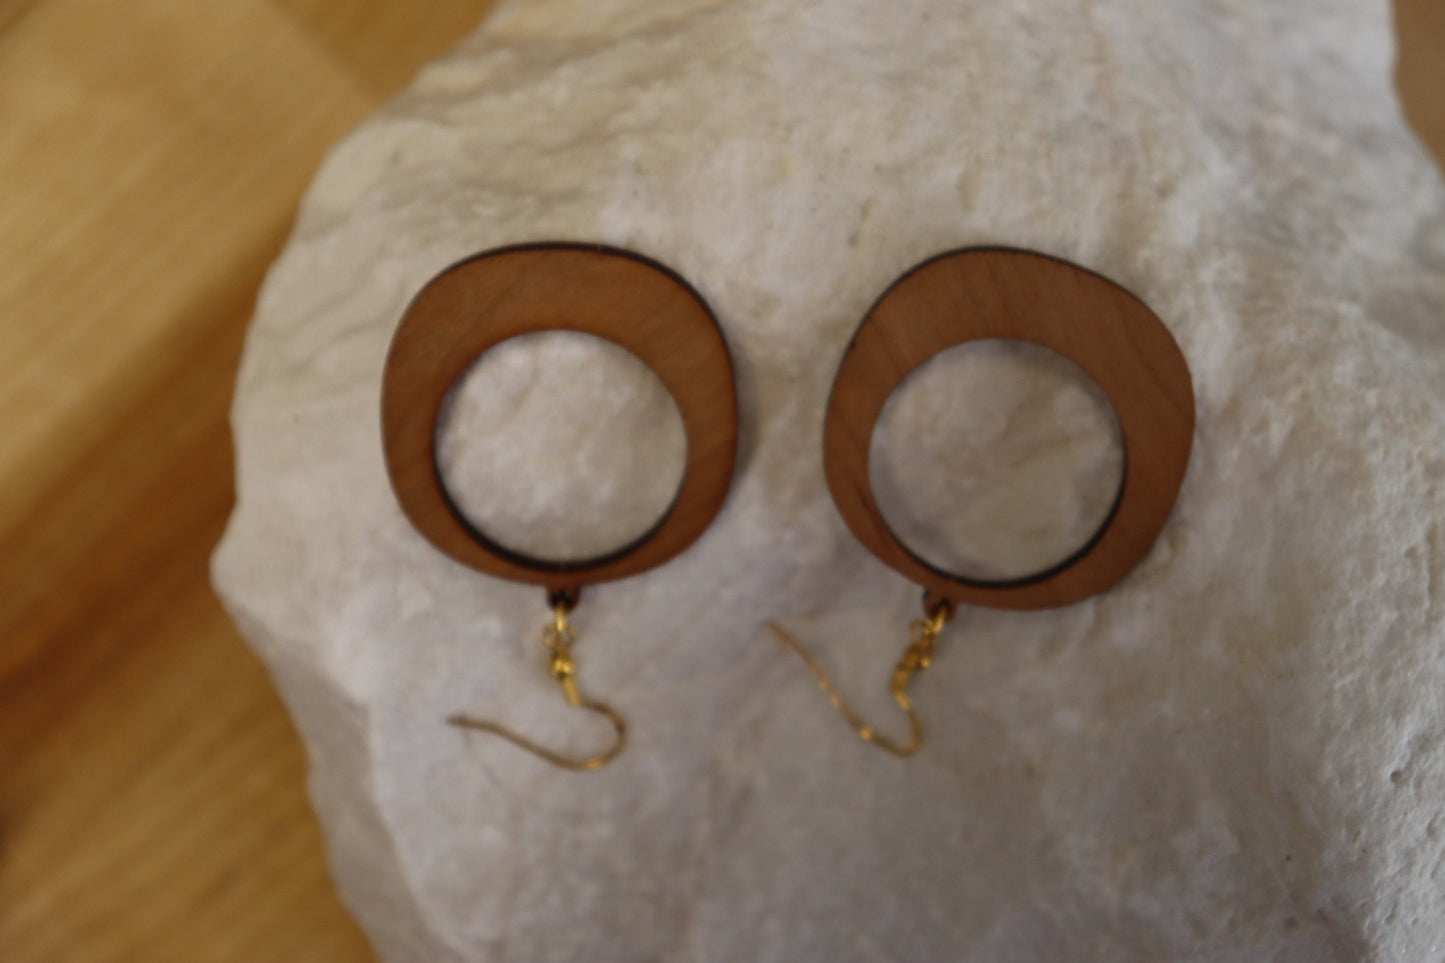 The Full Moon - Hardwood Earrings